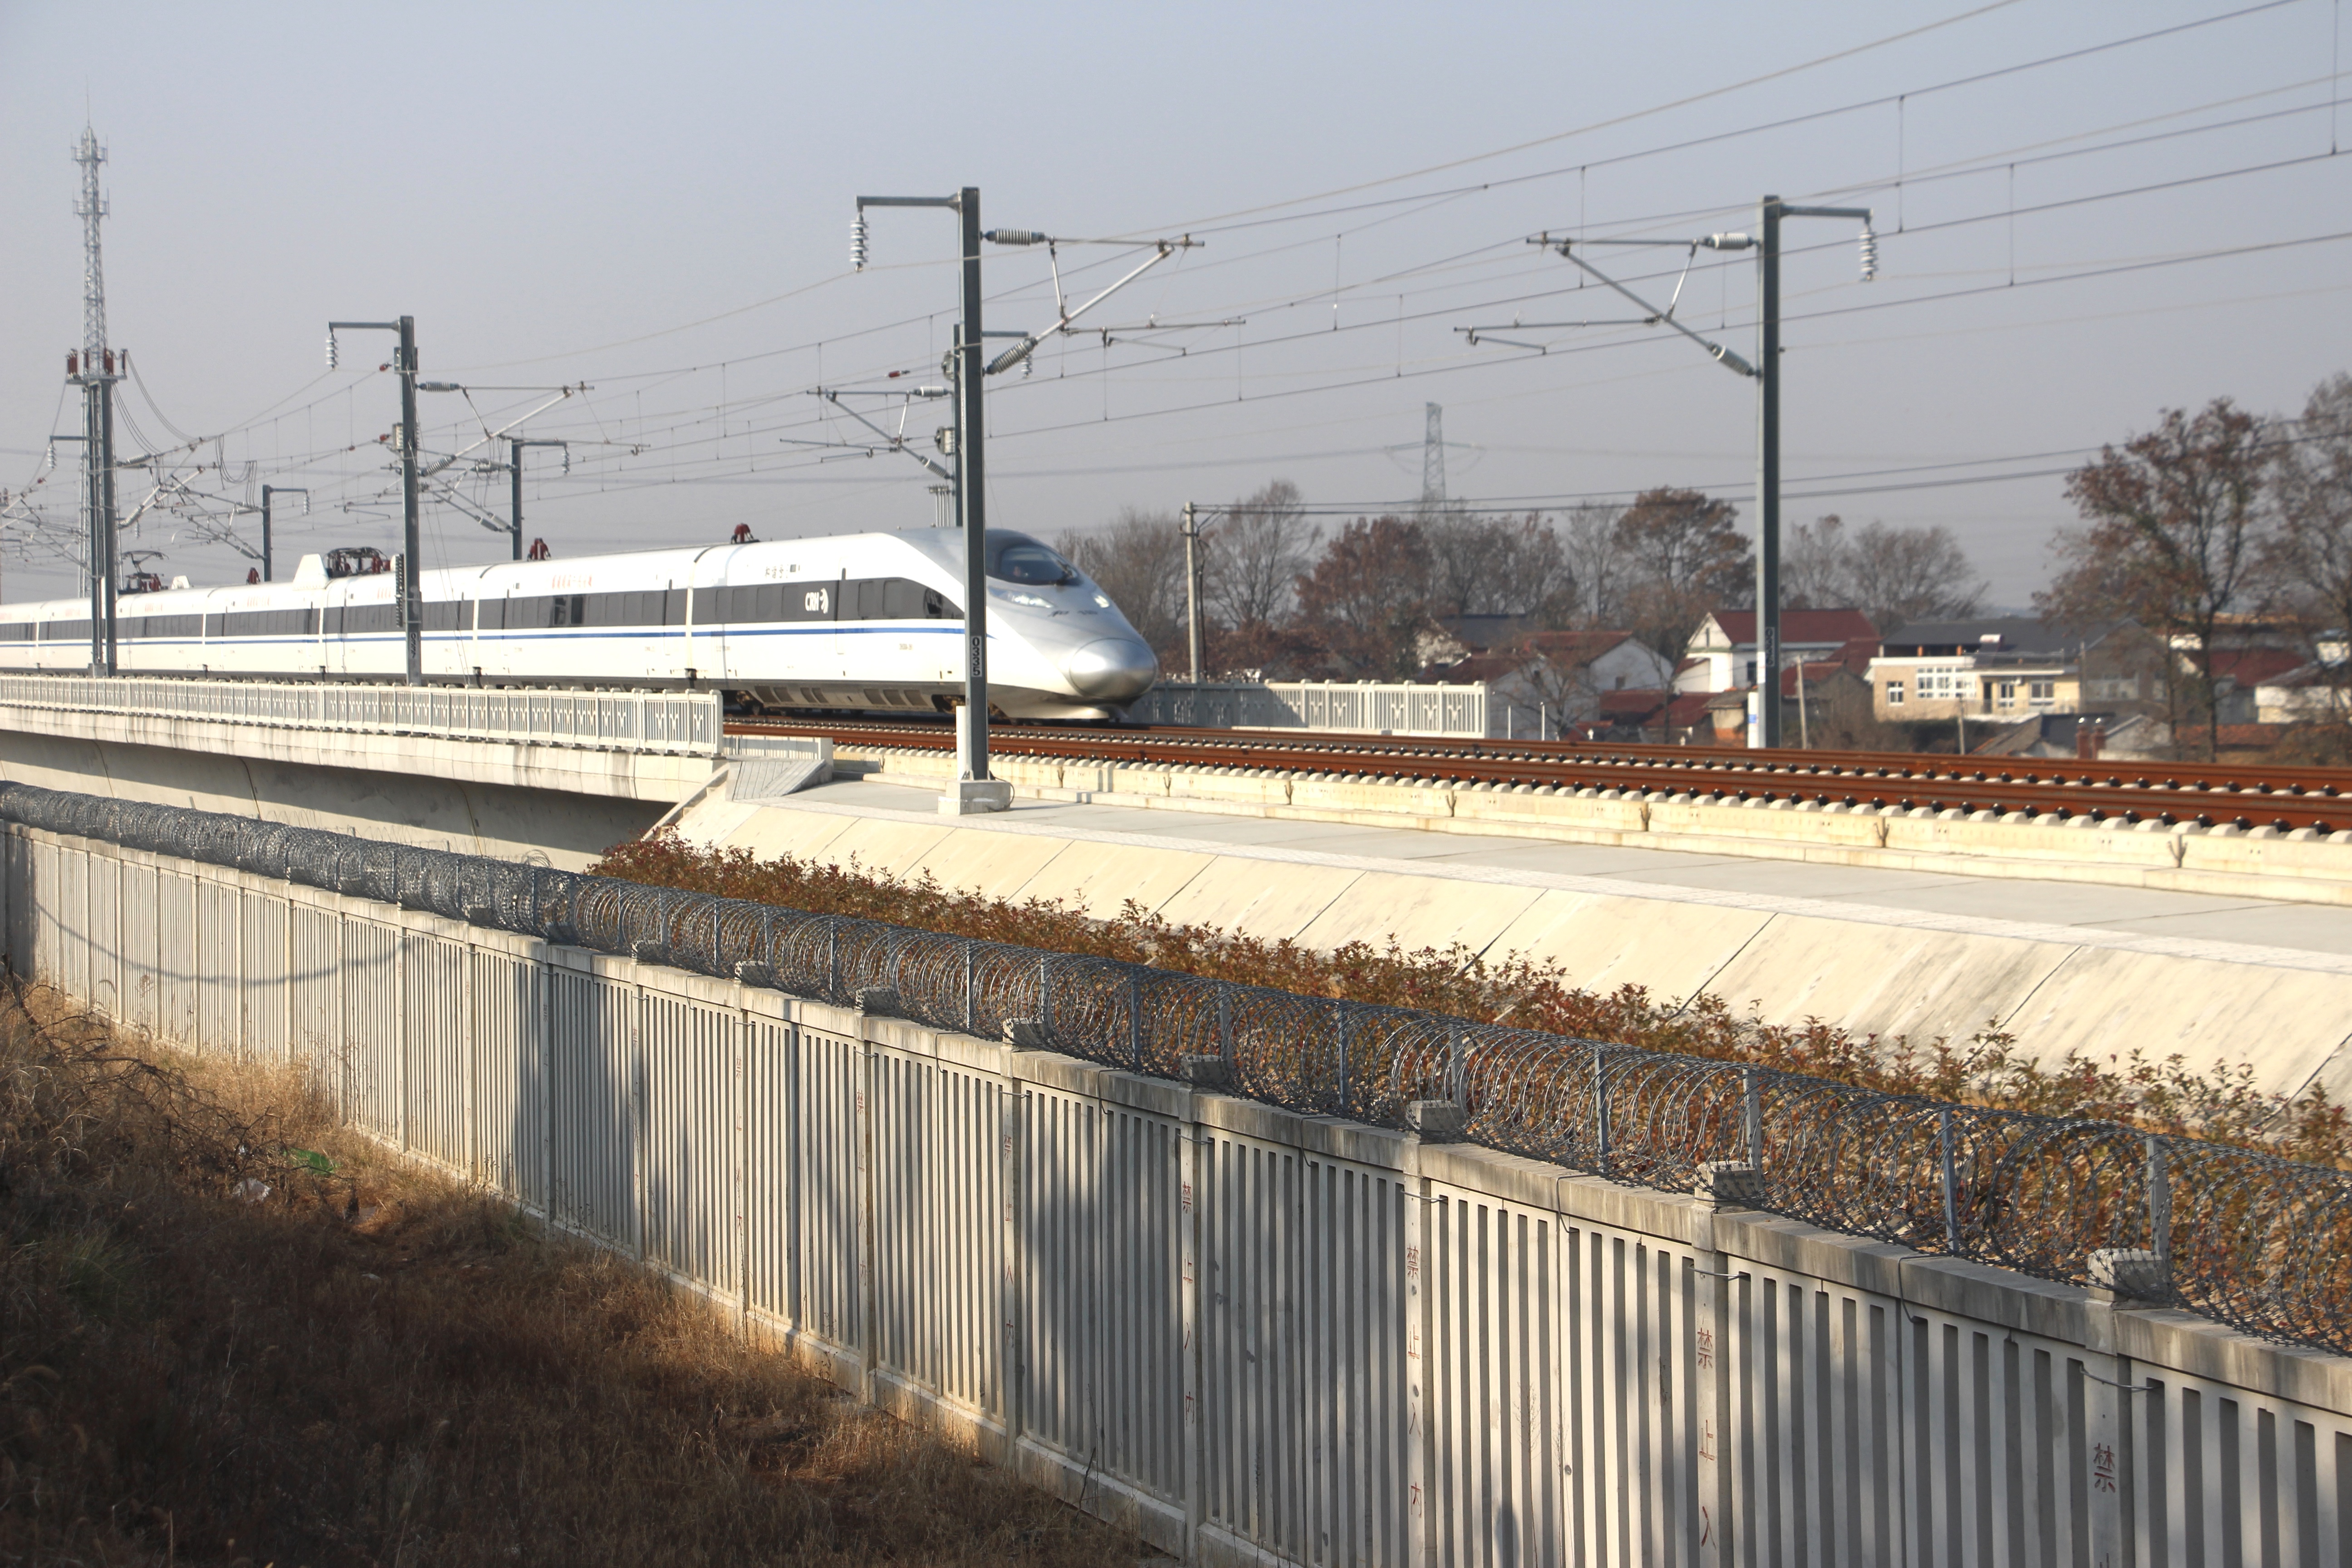 驰骋南北 纵横东西 中铁上海工程局参建六条铁路年内按期开通